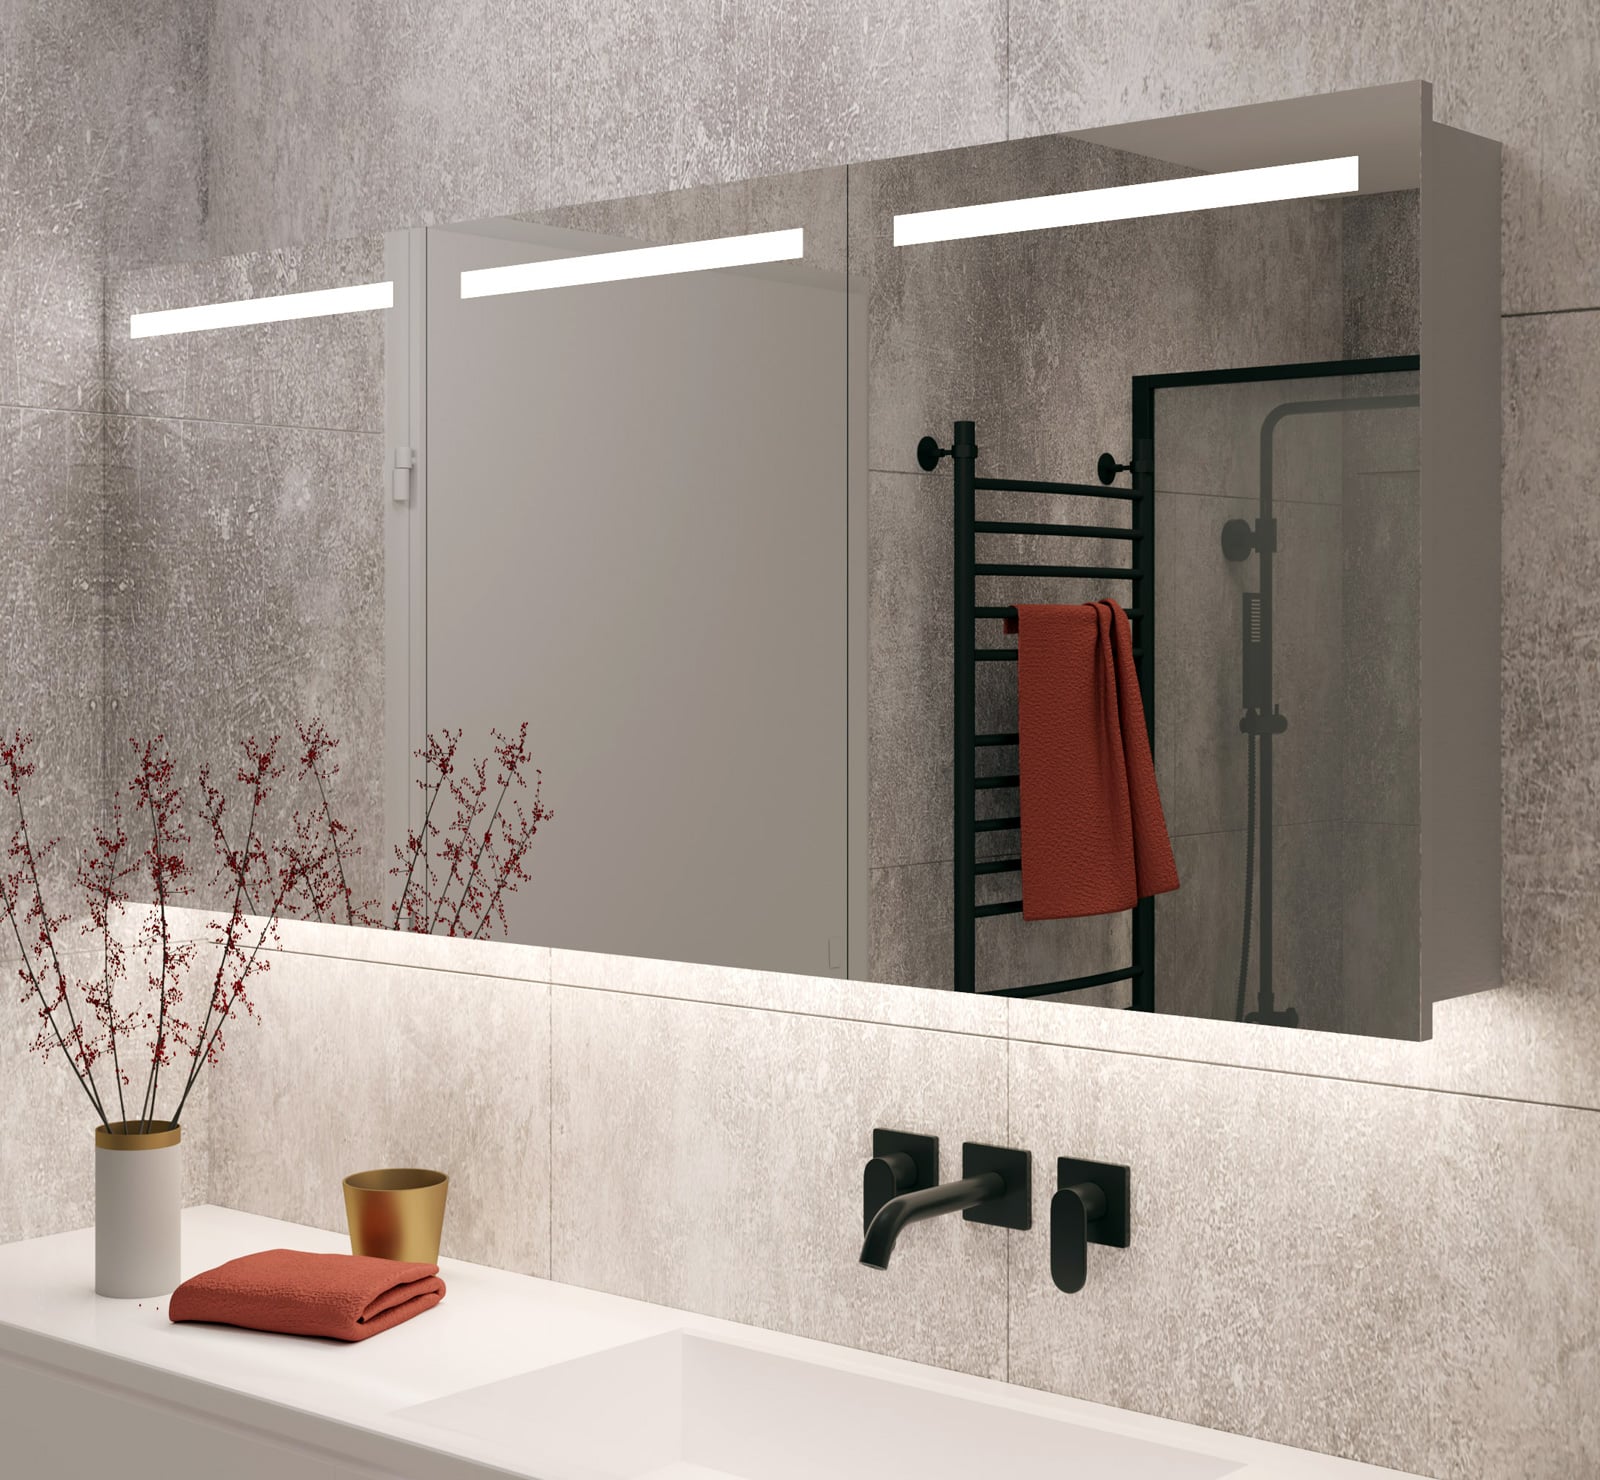 Monumentaal kort gevechten Aluminium badkamer spiegelkast met LED verlichting, verwarming, sensor en  stopcontact 160 x 70 cm - Designspiegels